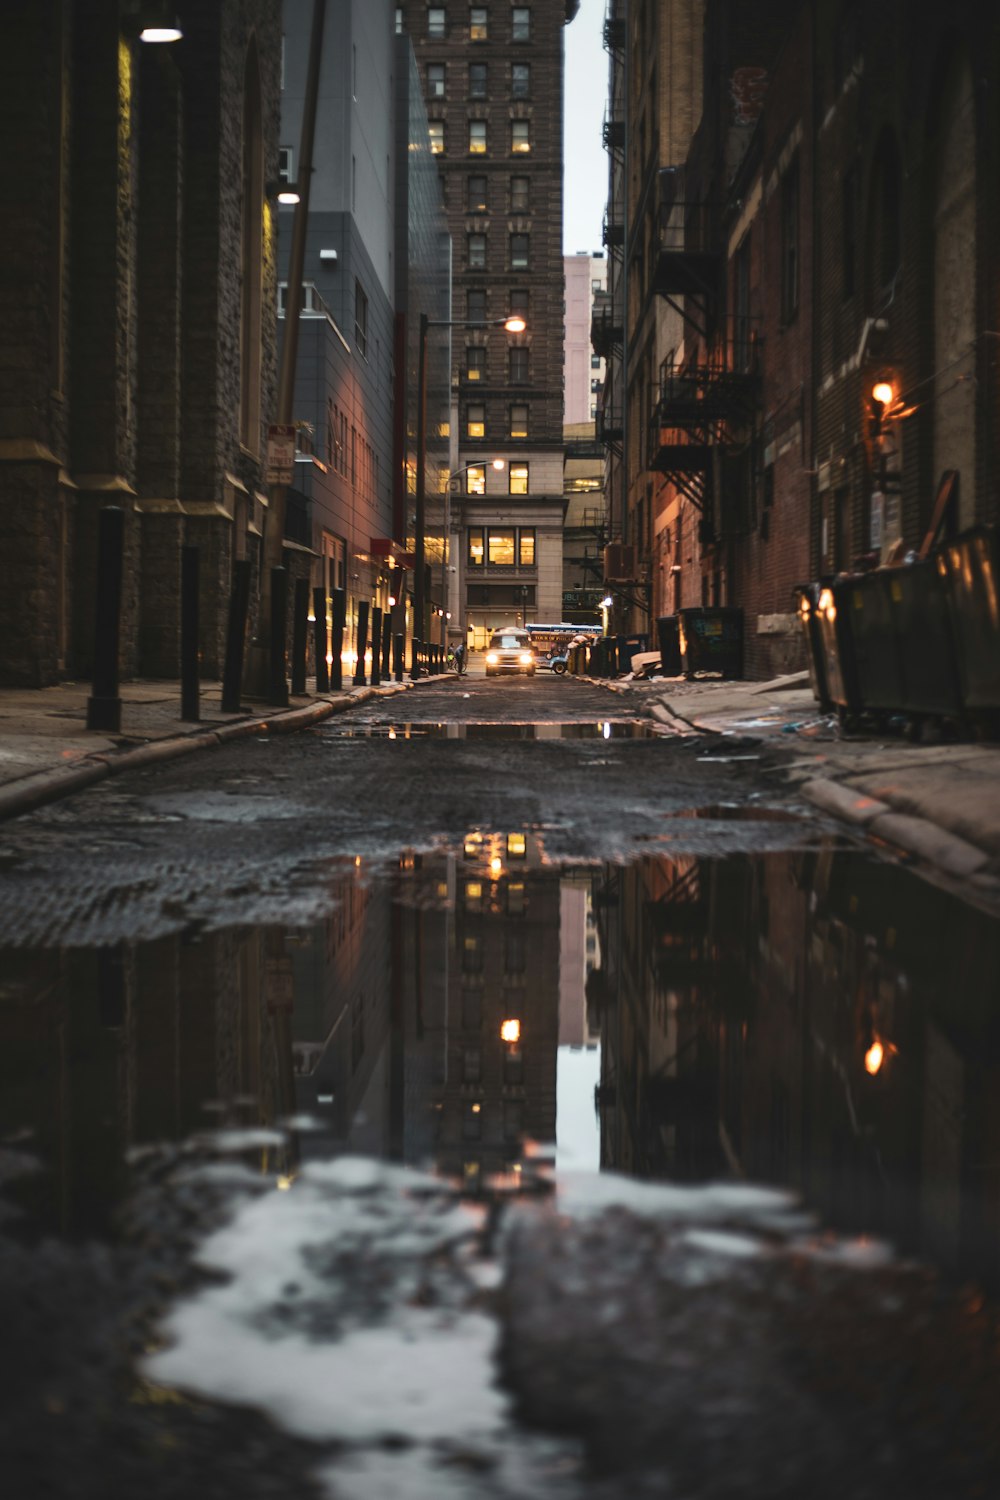 Une rue de la ville avec des flaques d’eau sur le sol